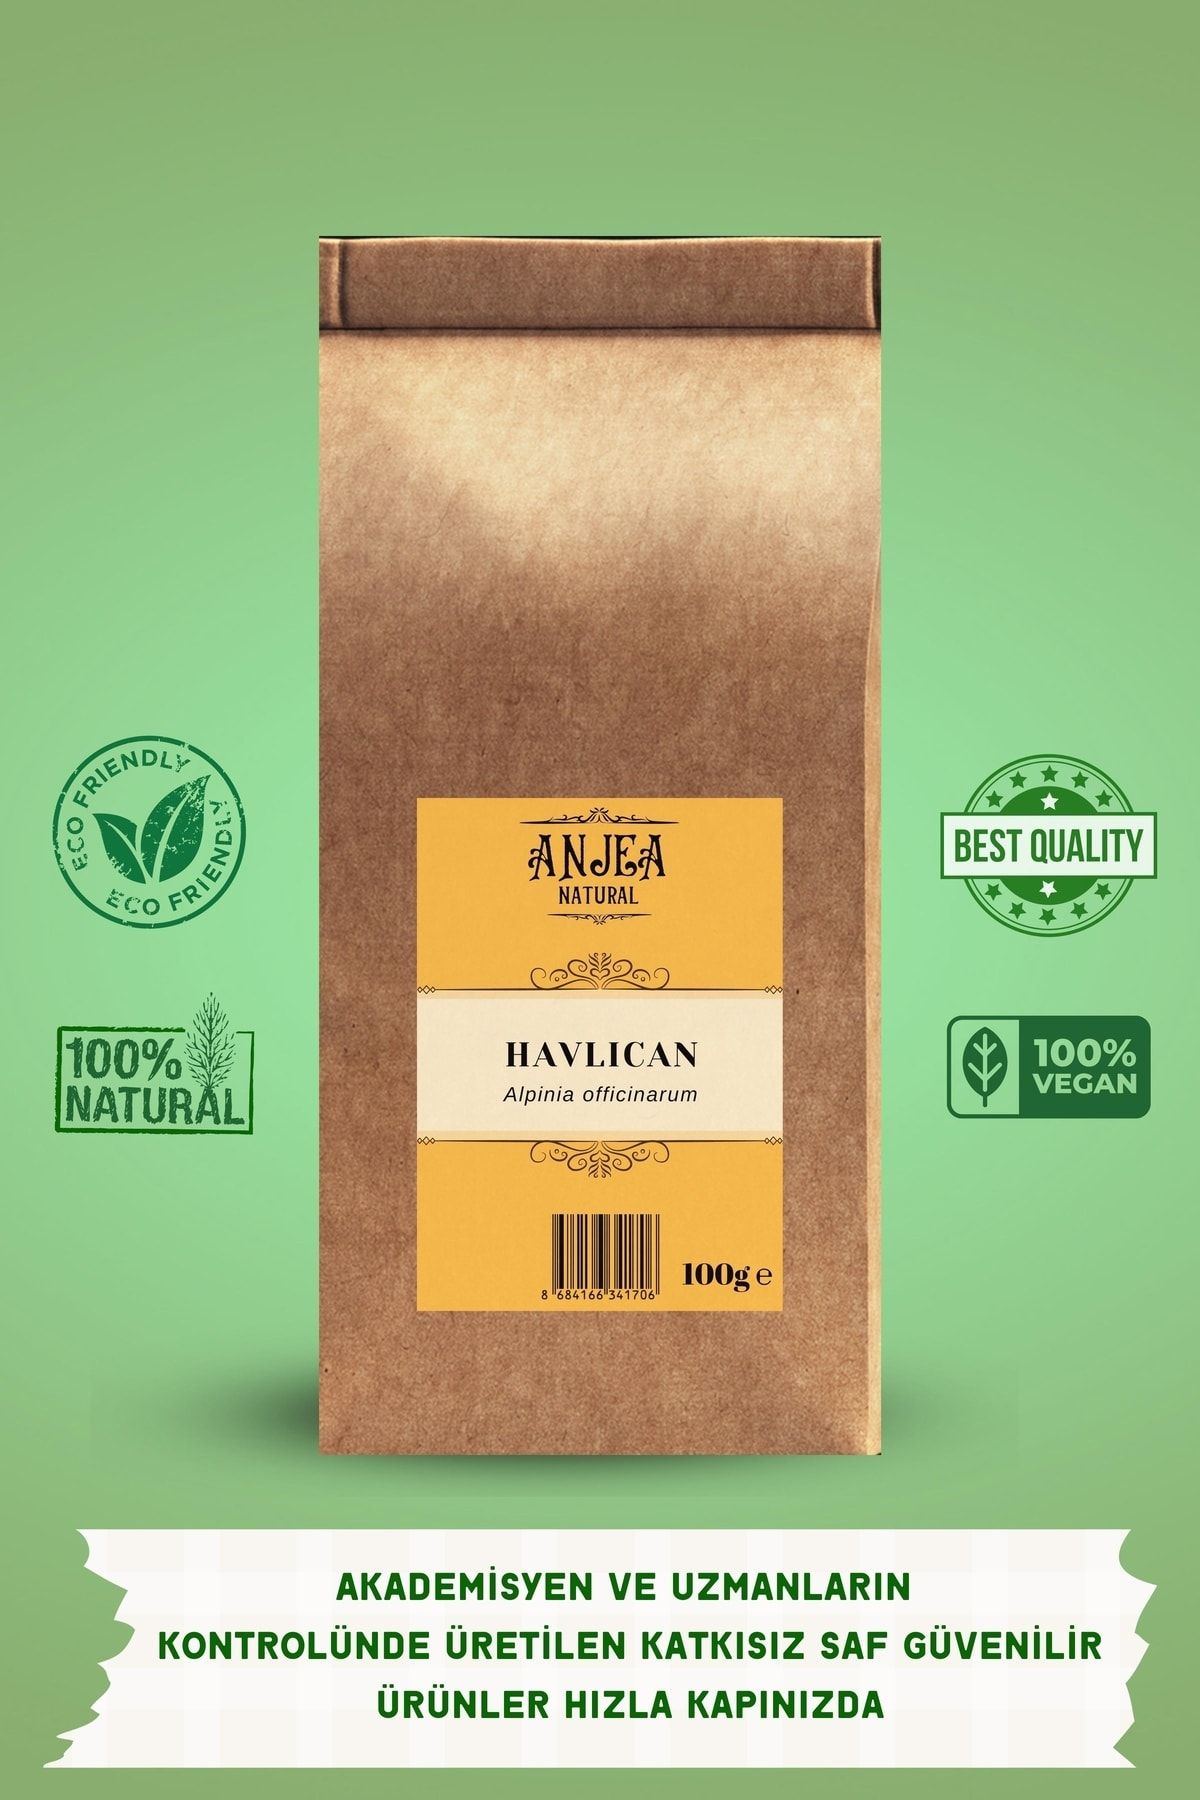 ANJEA Havlıcan 100 Gr Galangal - Alpinia Officinarum 100% Natural Herb